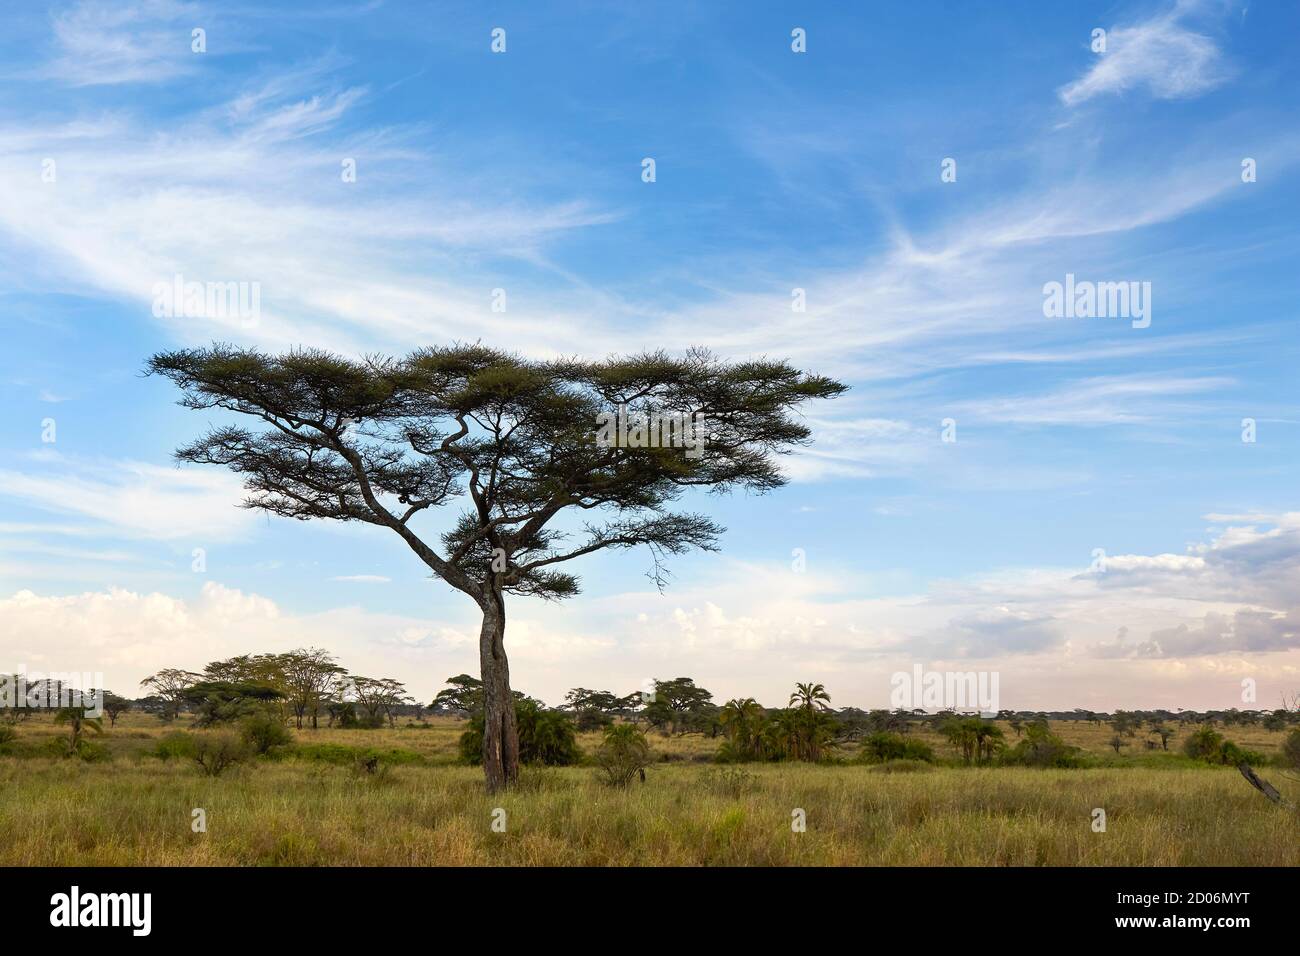 Acacia Thorn Tree (Vachelia tortilis) en el Parque Nacional Serengeti, Tanzania, África. Foto de stock